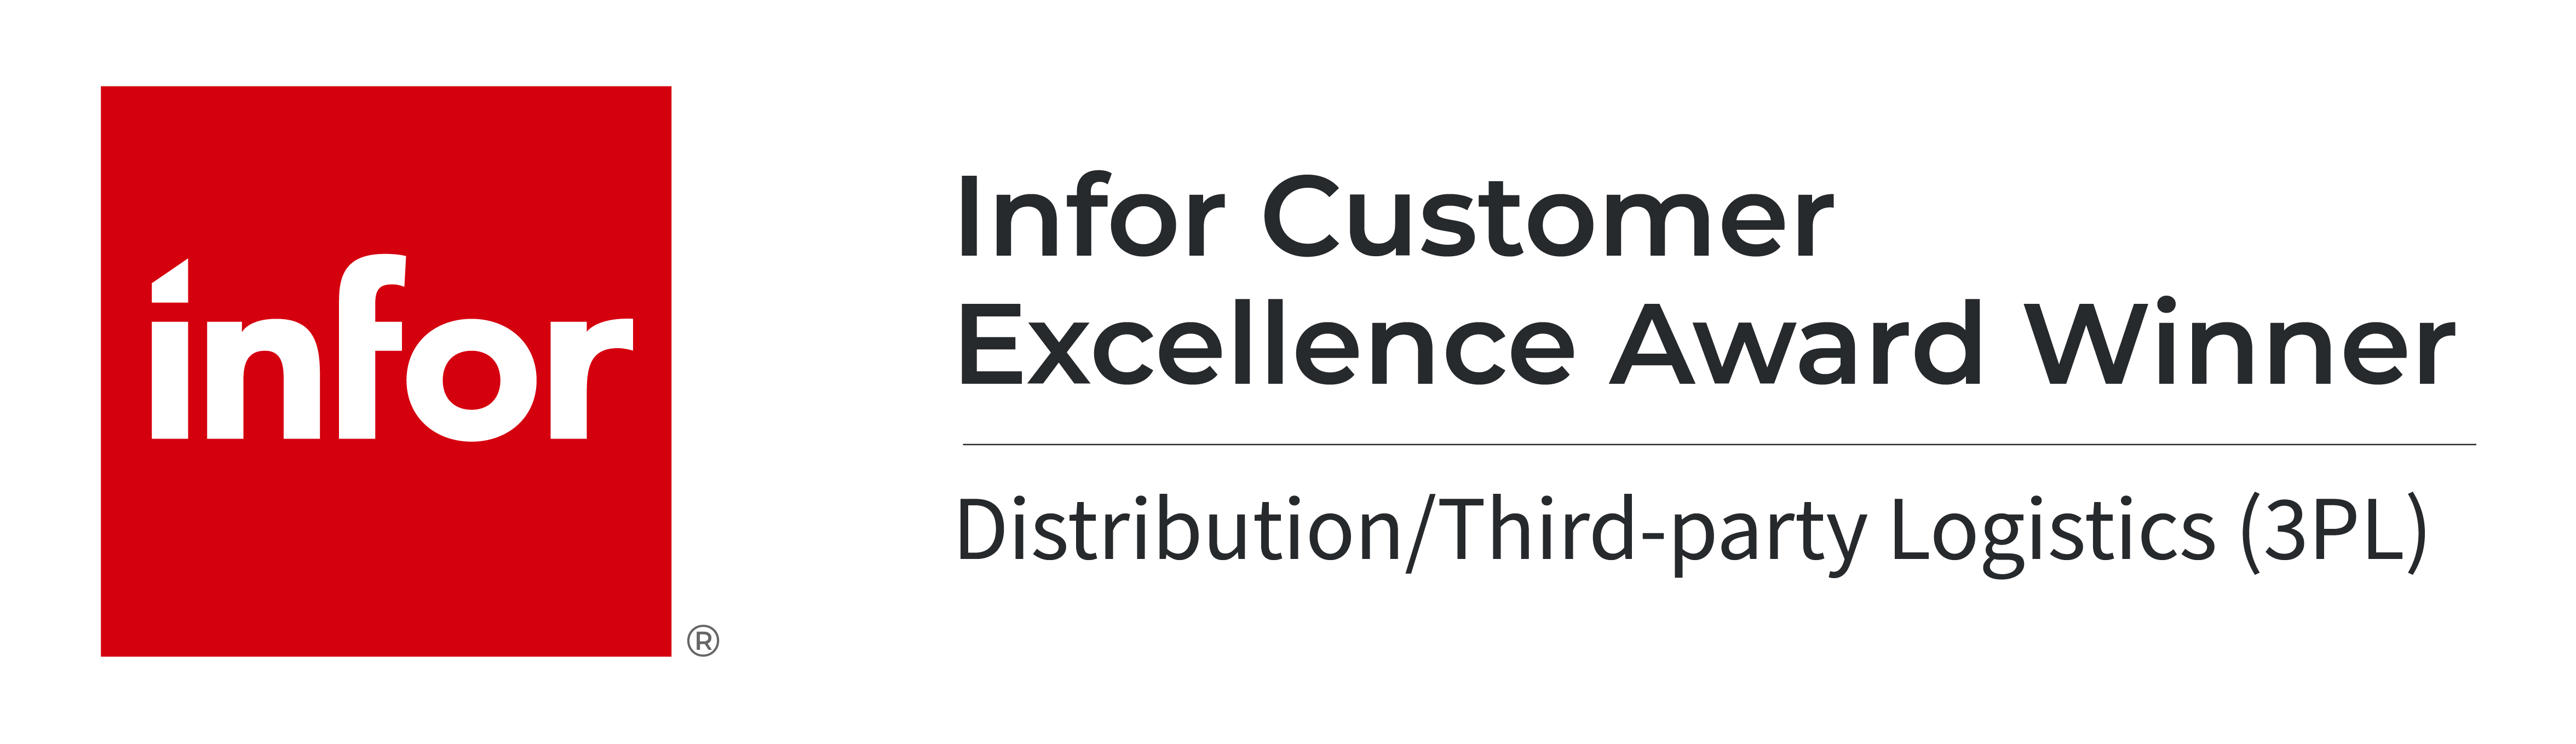 infor customer excellence award winner